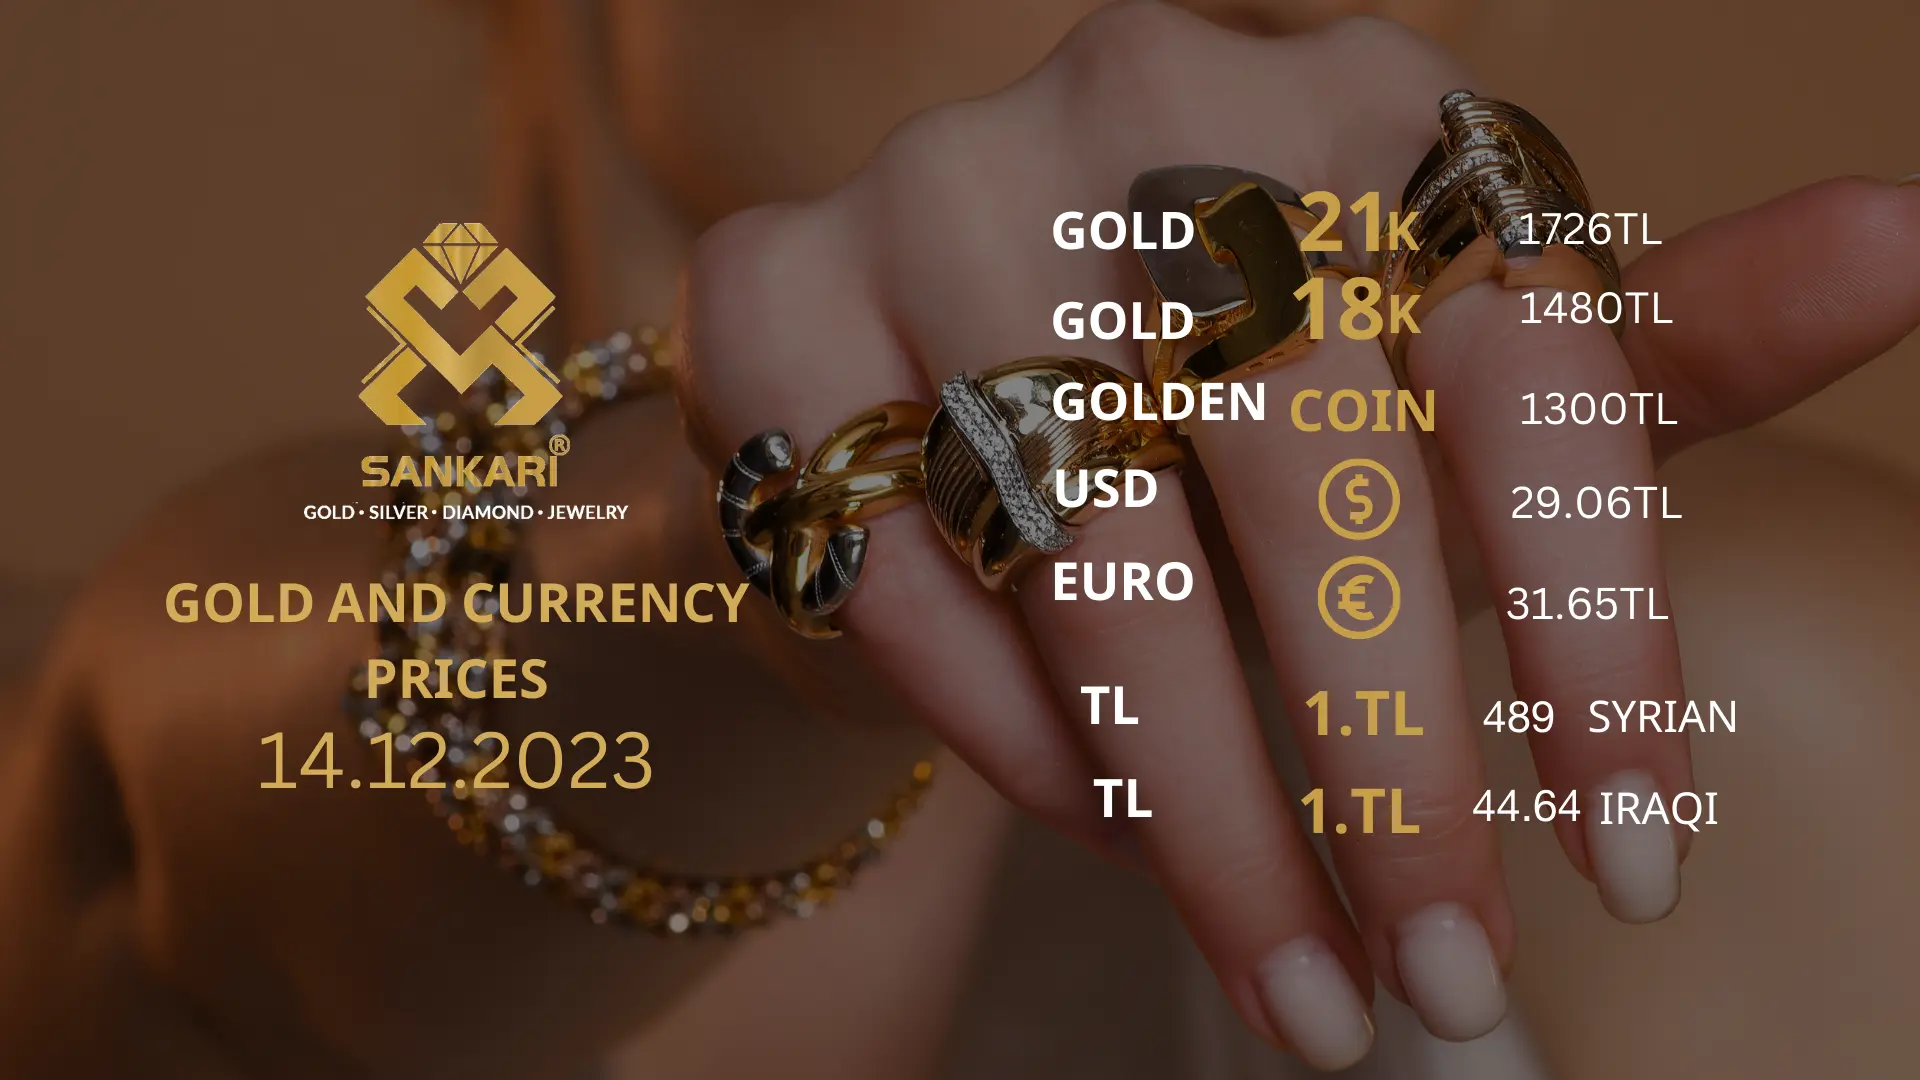 سعر غرام الذهب يوم الخميس - سعر الليرة التركية اليوم